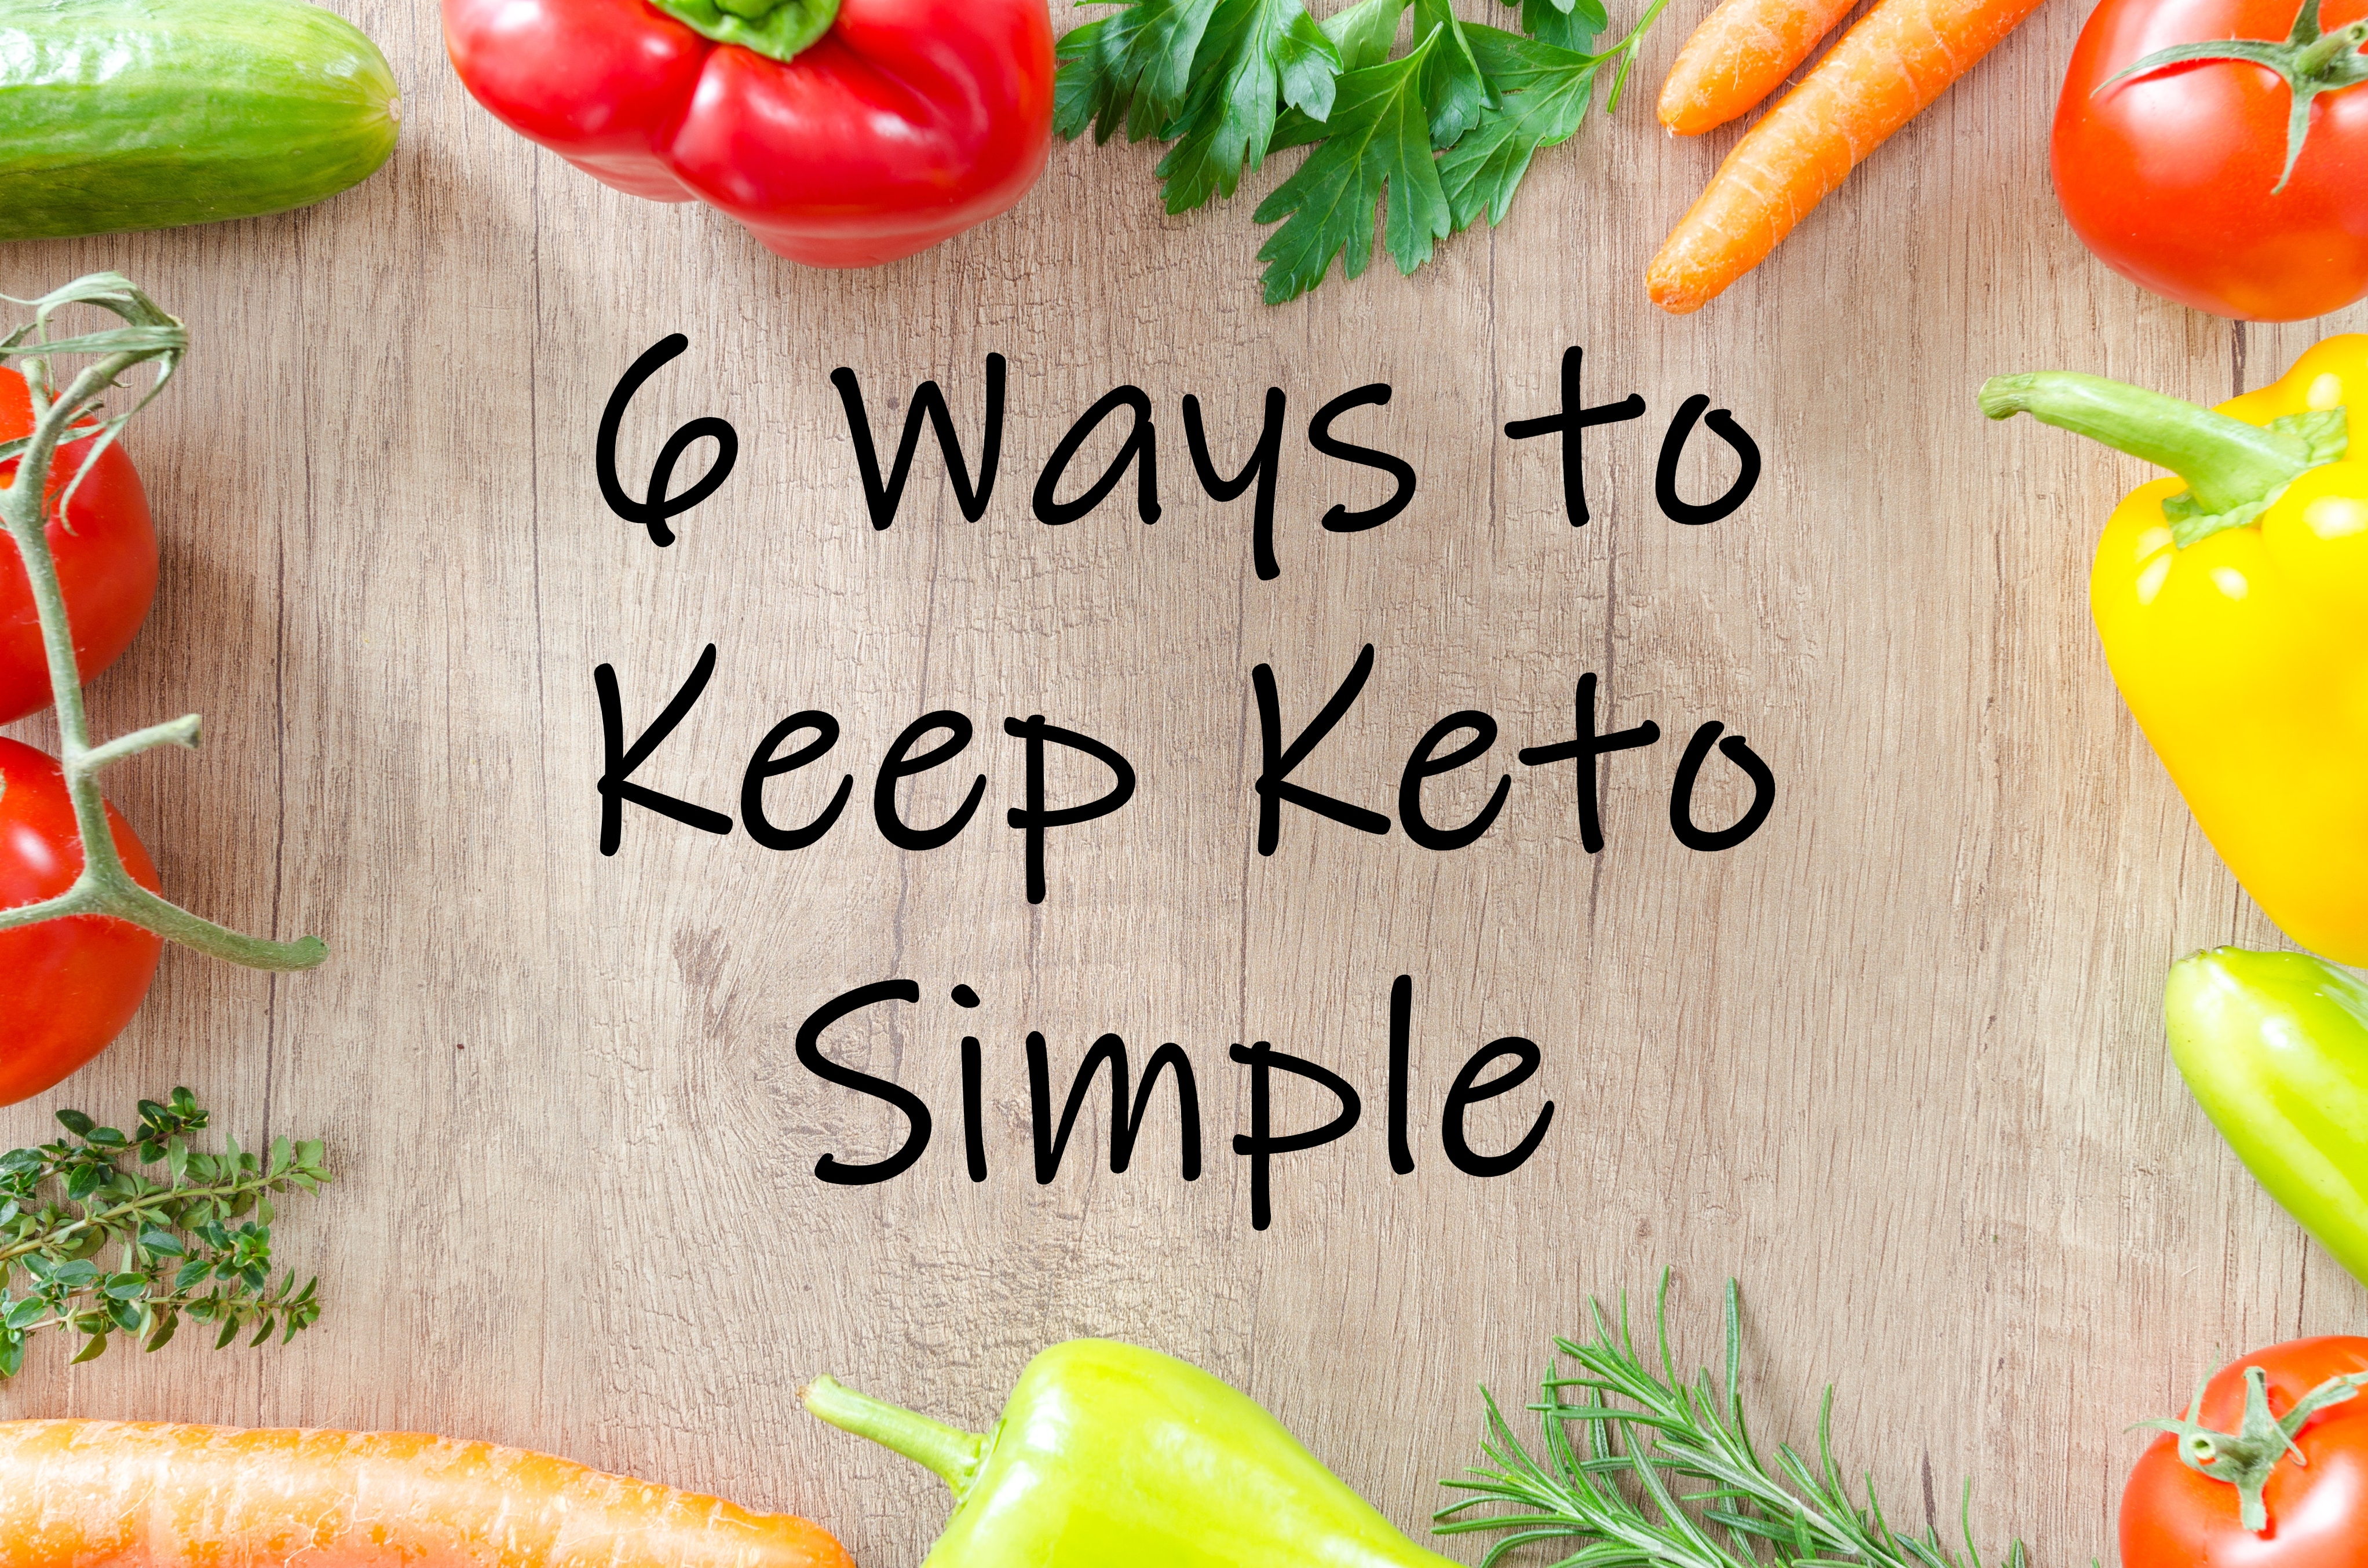 keto keep it simple